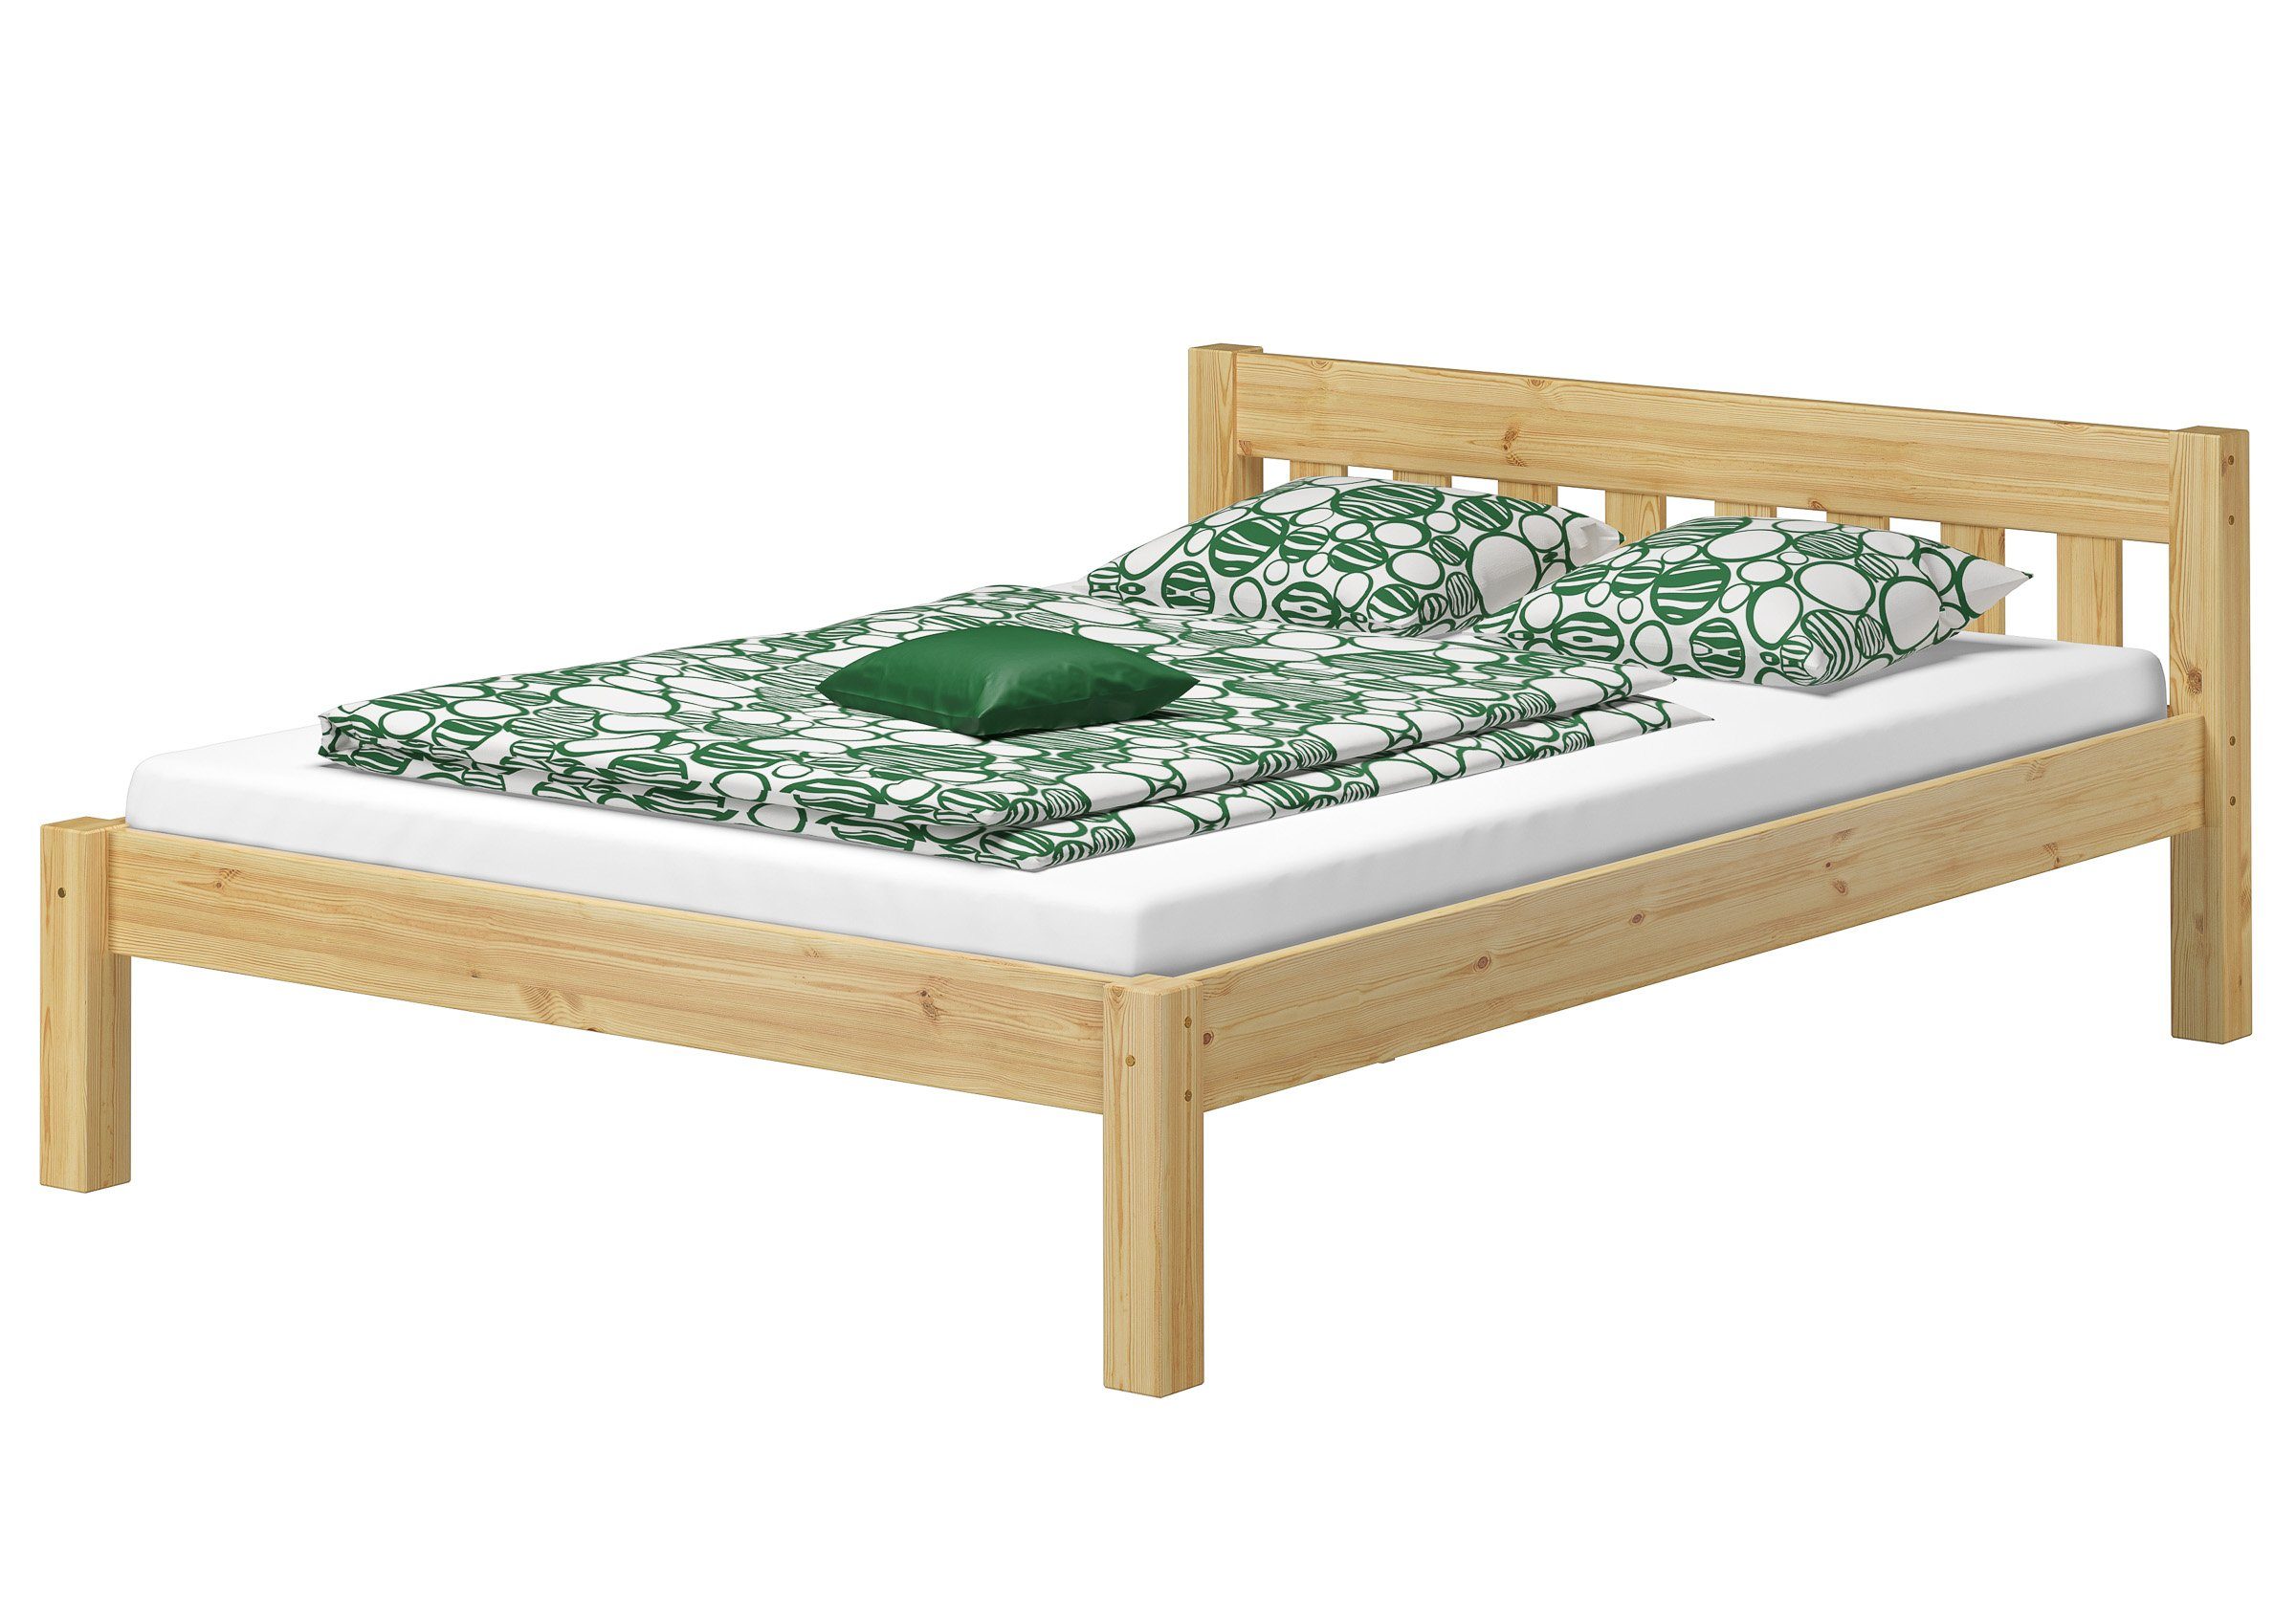 Massivholzbett 140x190 Zubehör, Kieferfarblos lackiert Kurzes wählbares Bett Doppelbett ERST-HOLZ aus Kiefer,